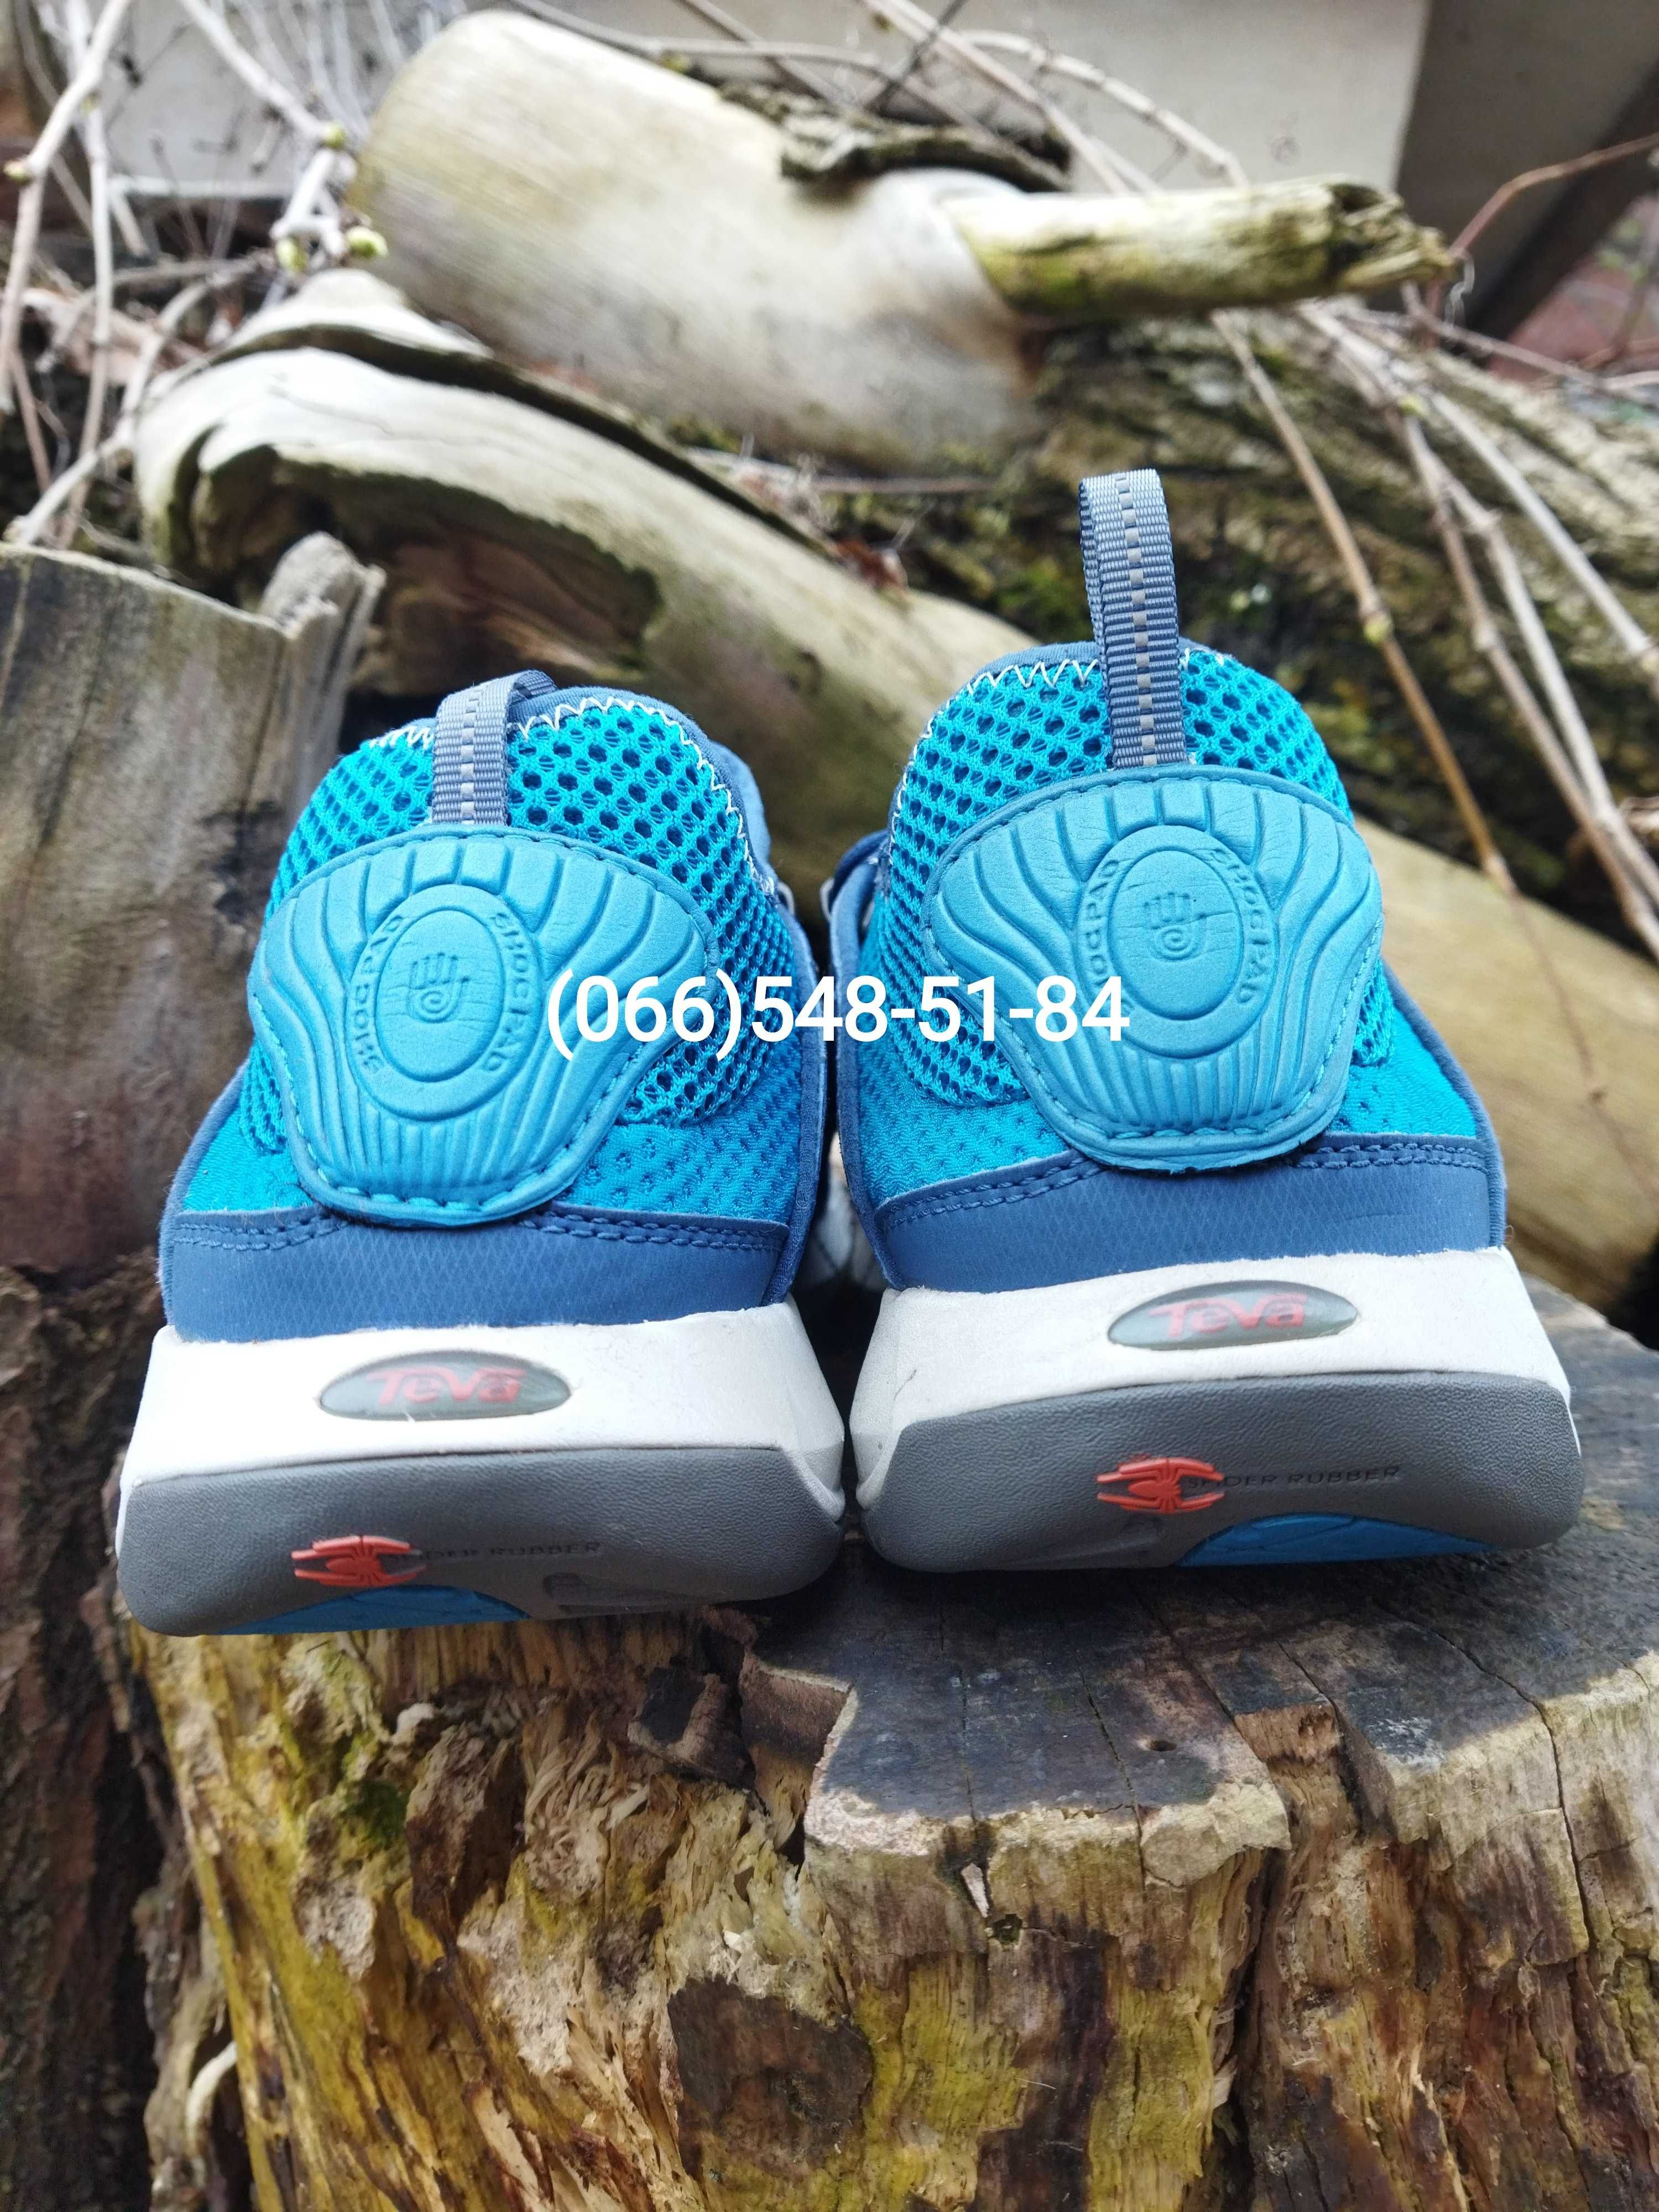 27 см - гибридные кроссовки амфибии Teva треккинговые аквашузы (обмен)